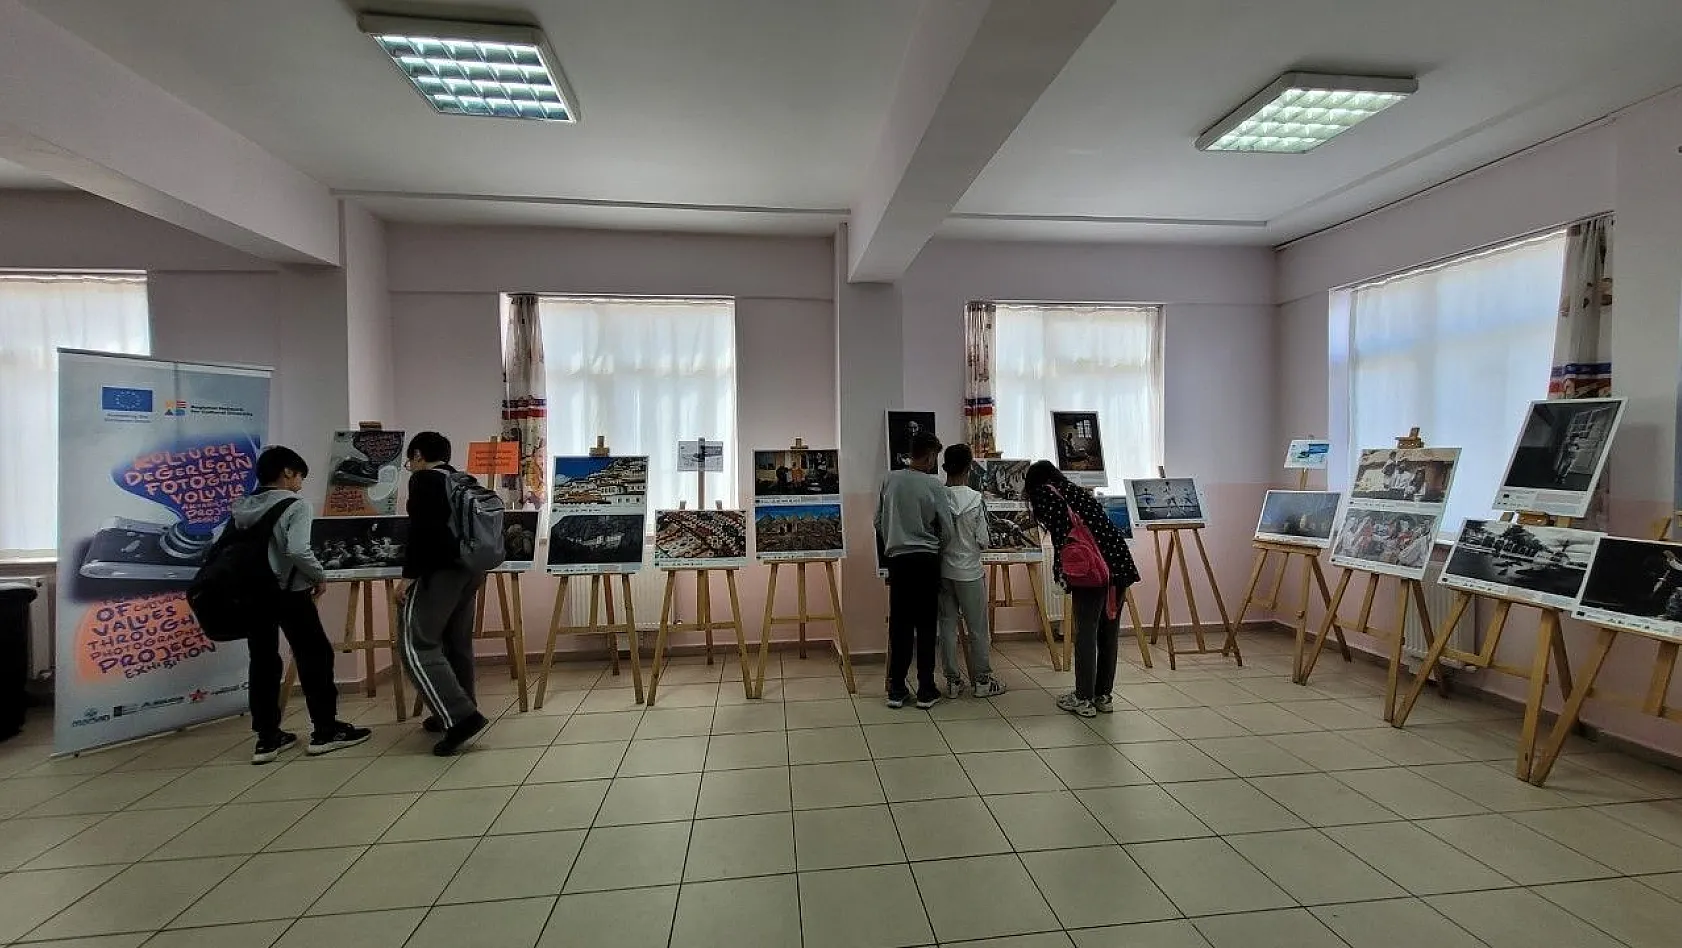 Kültürel Değerler sergisinin son durağı Arnavutluk oldu